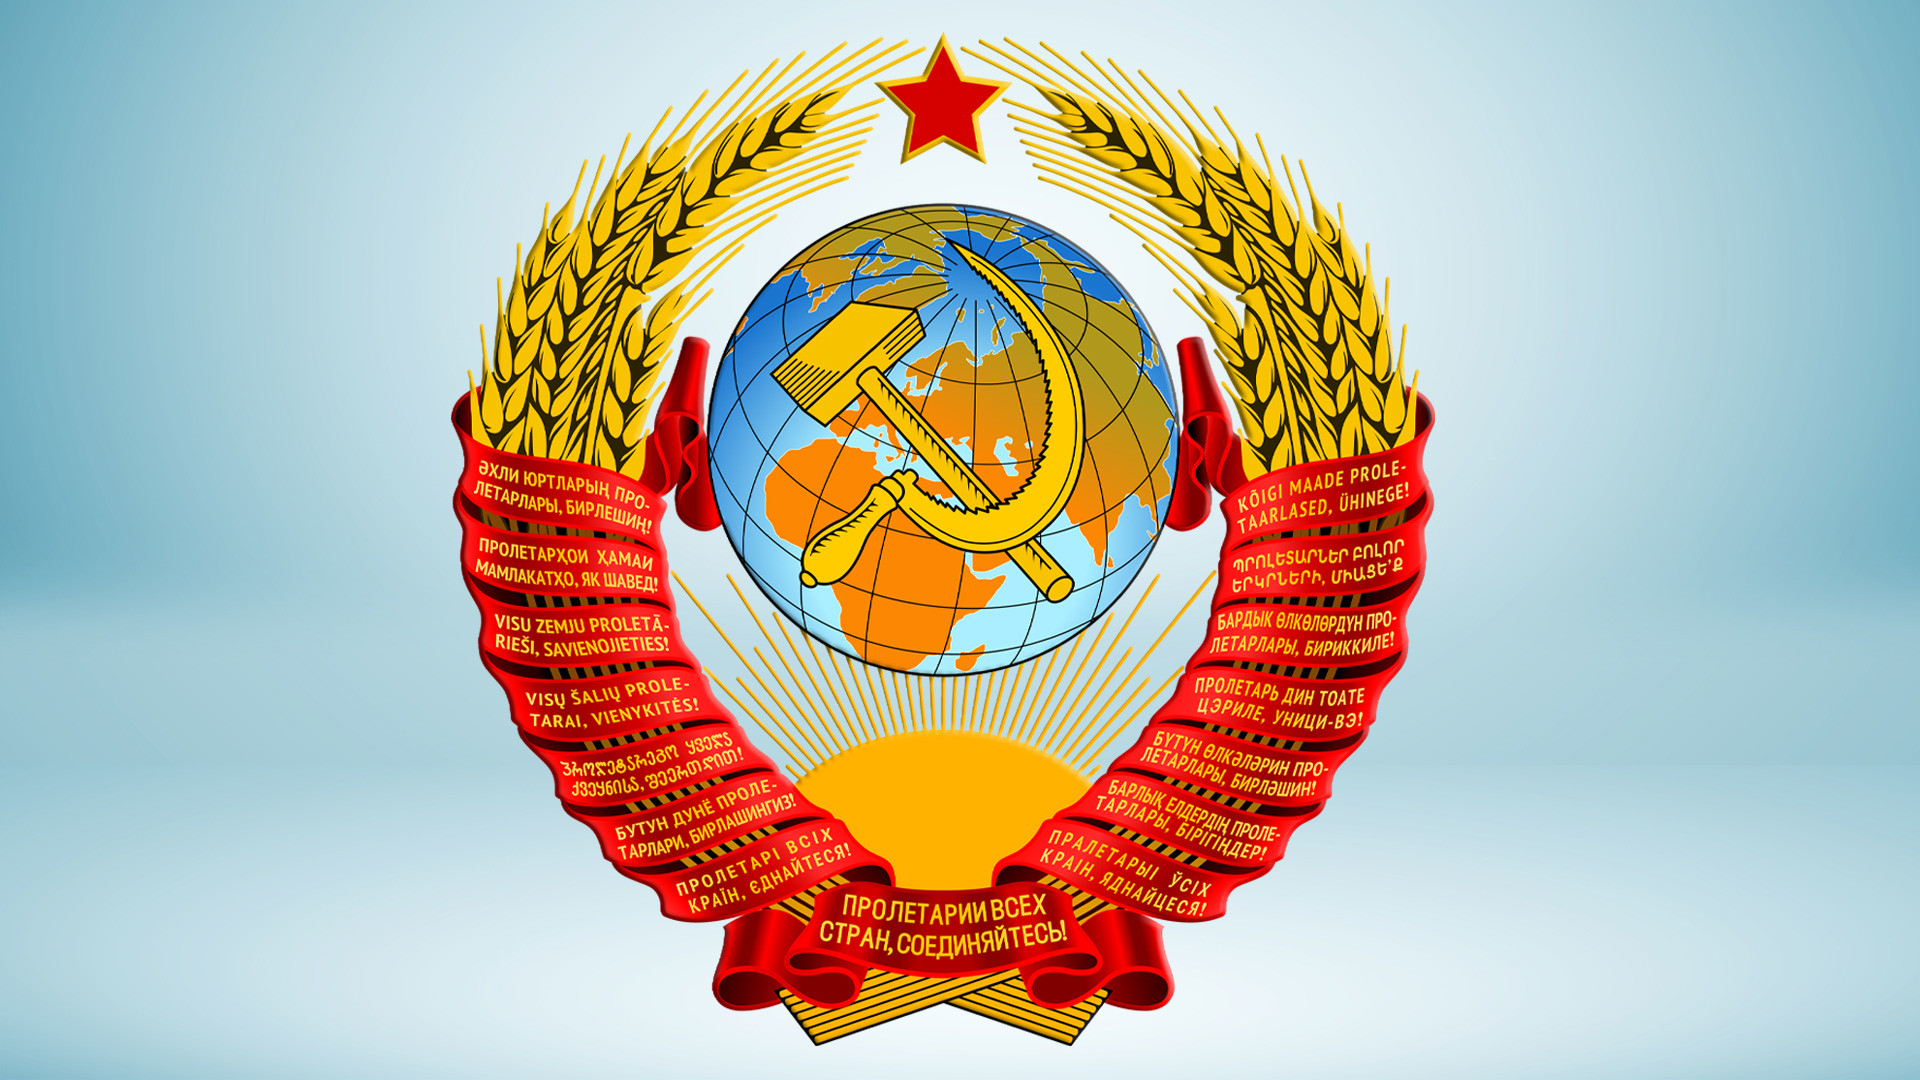 Верховный суд СССР герб